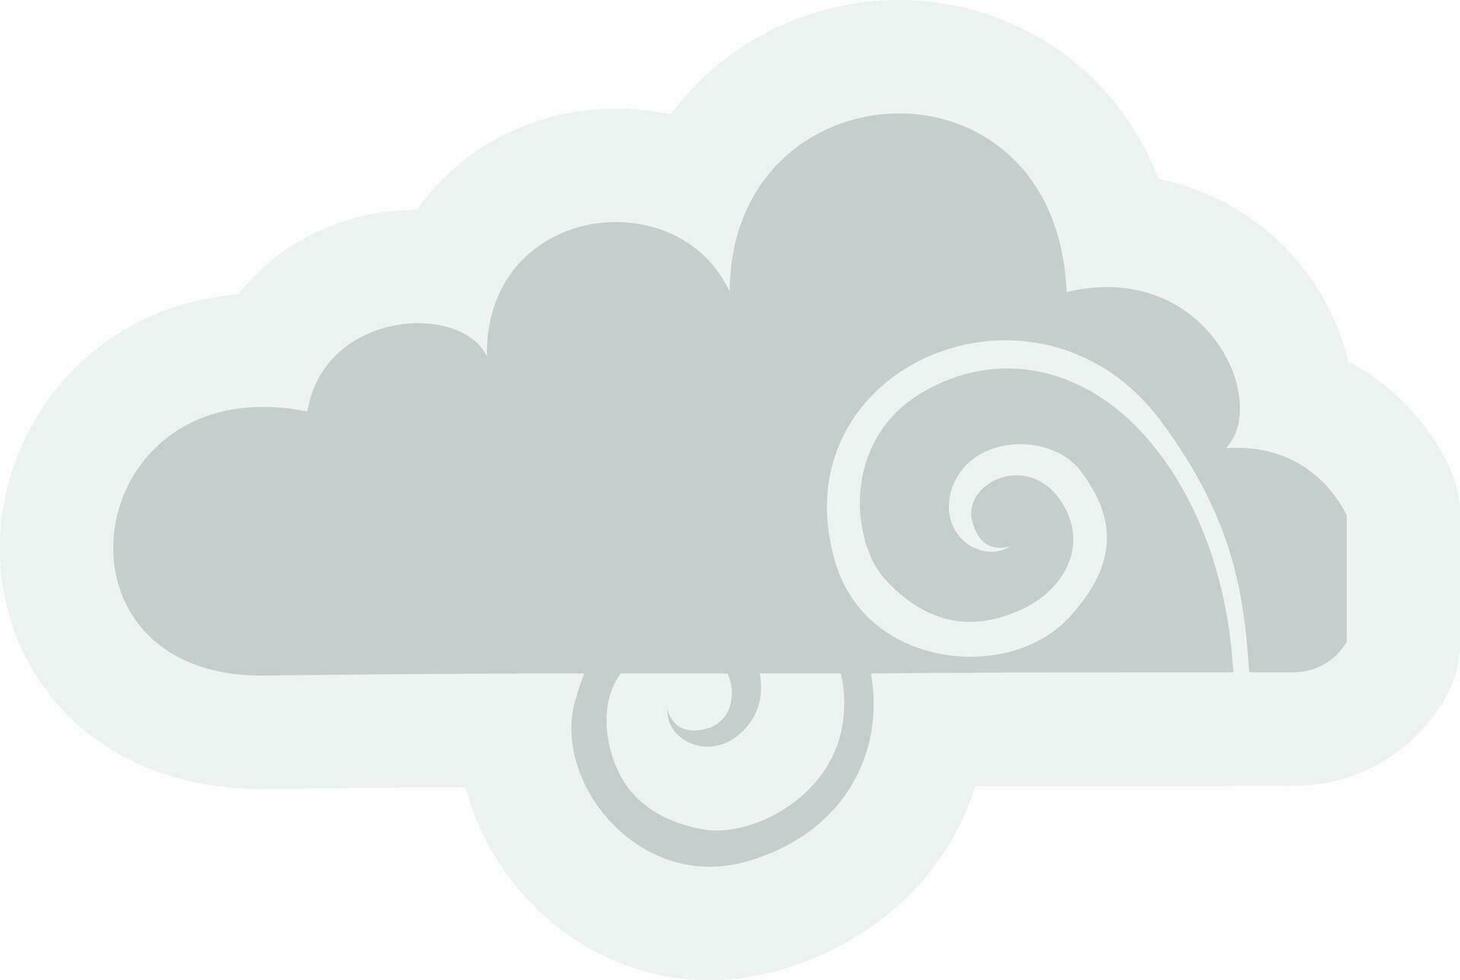 grijs wolk in vlak stijl illustratie. vector